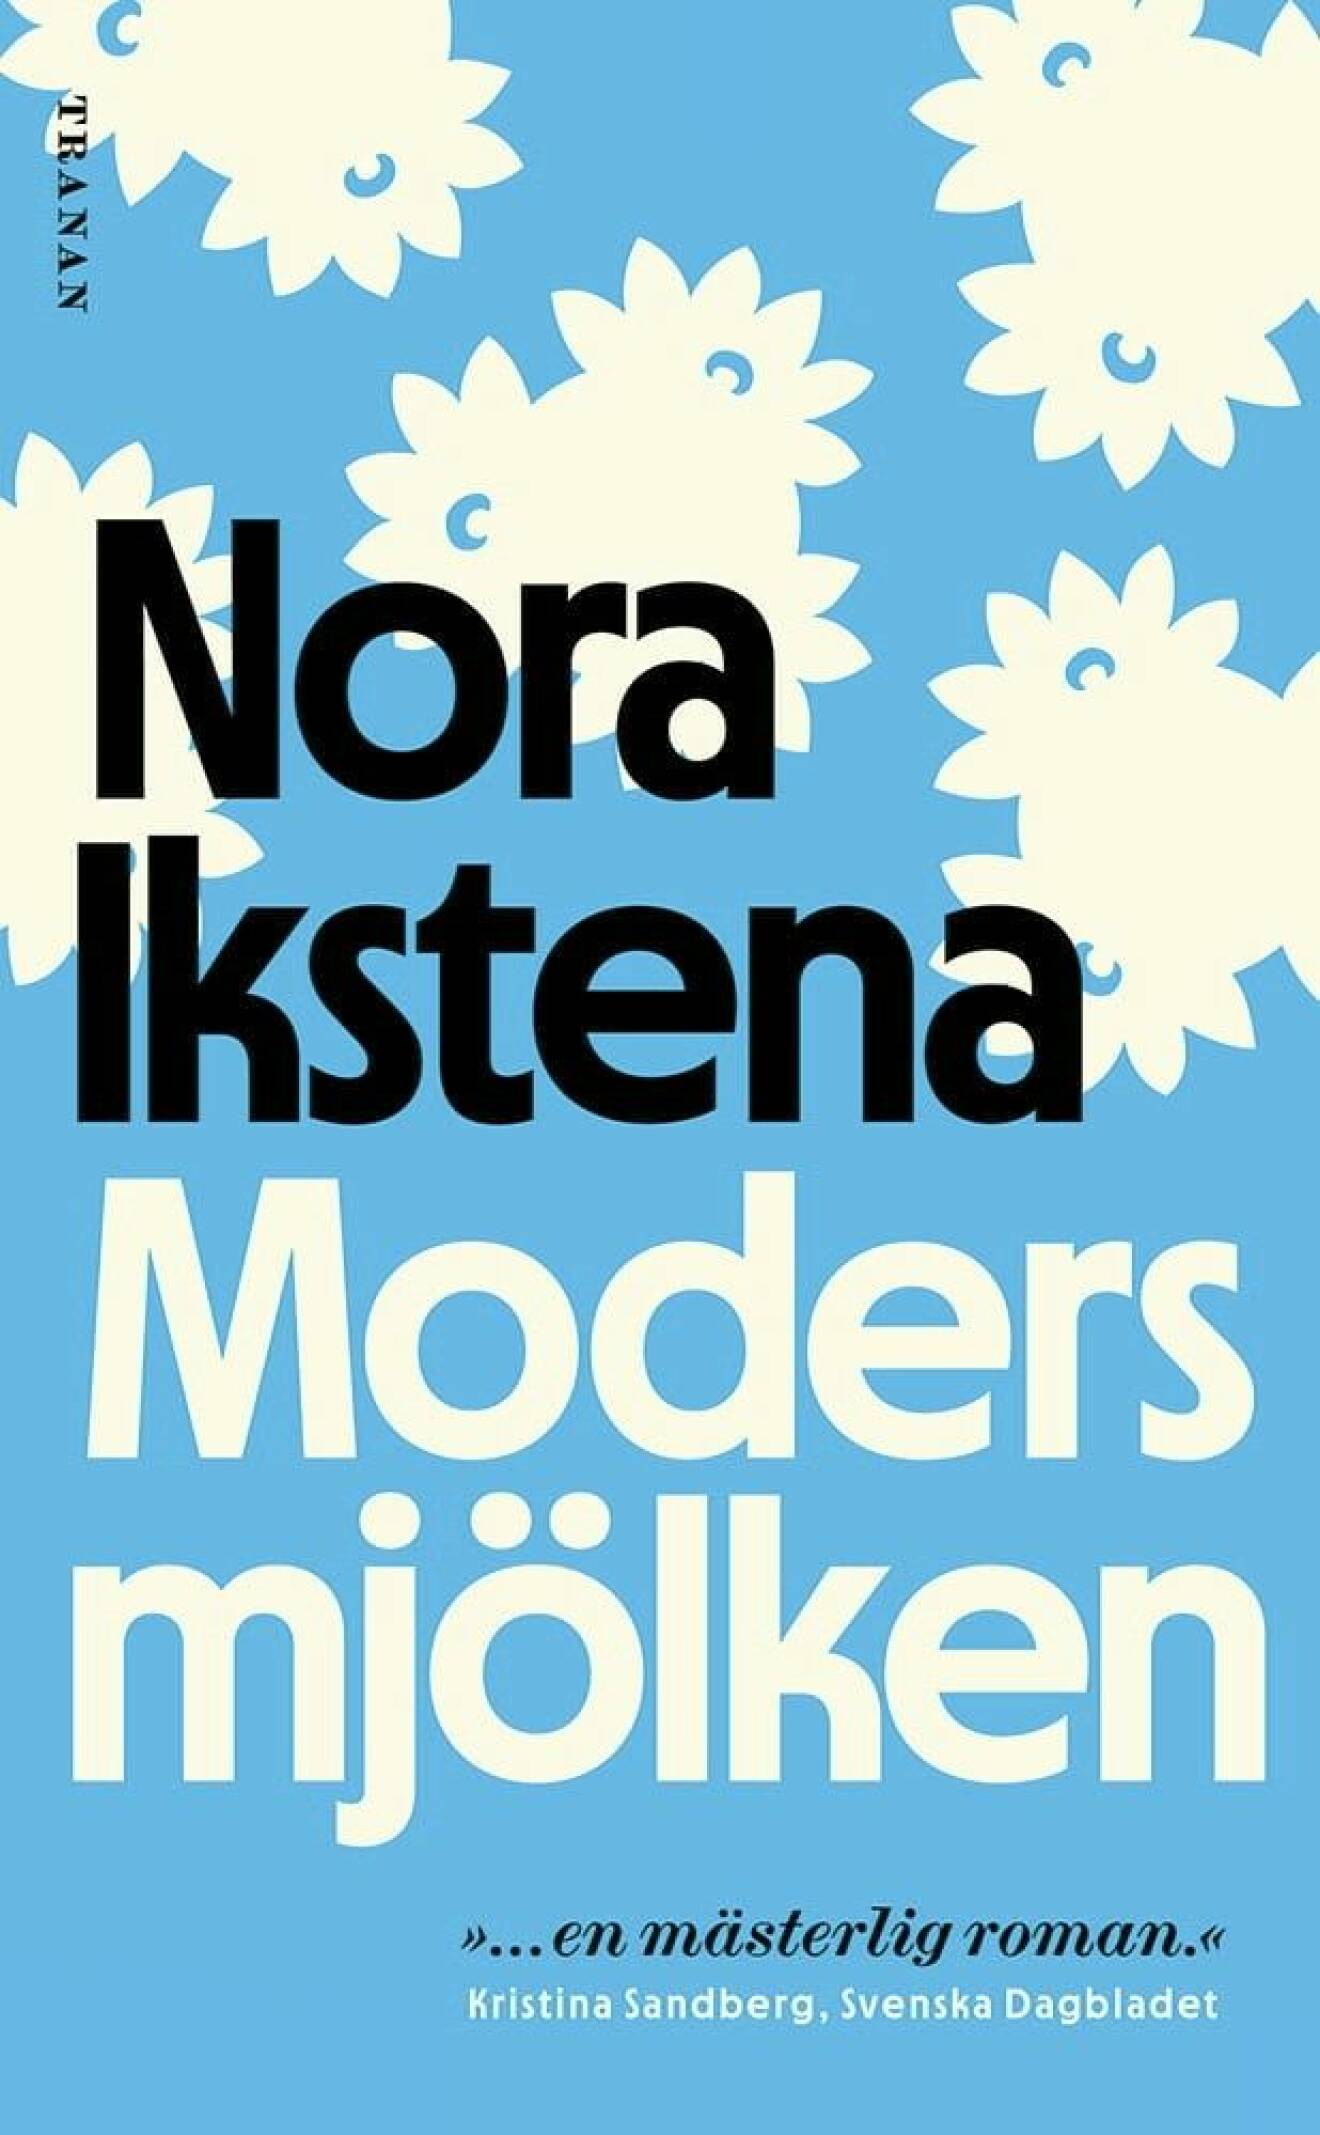 Modersmjölken av Nora Ikstena.